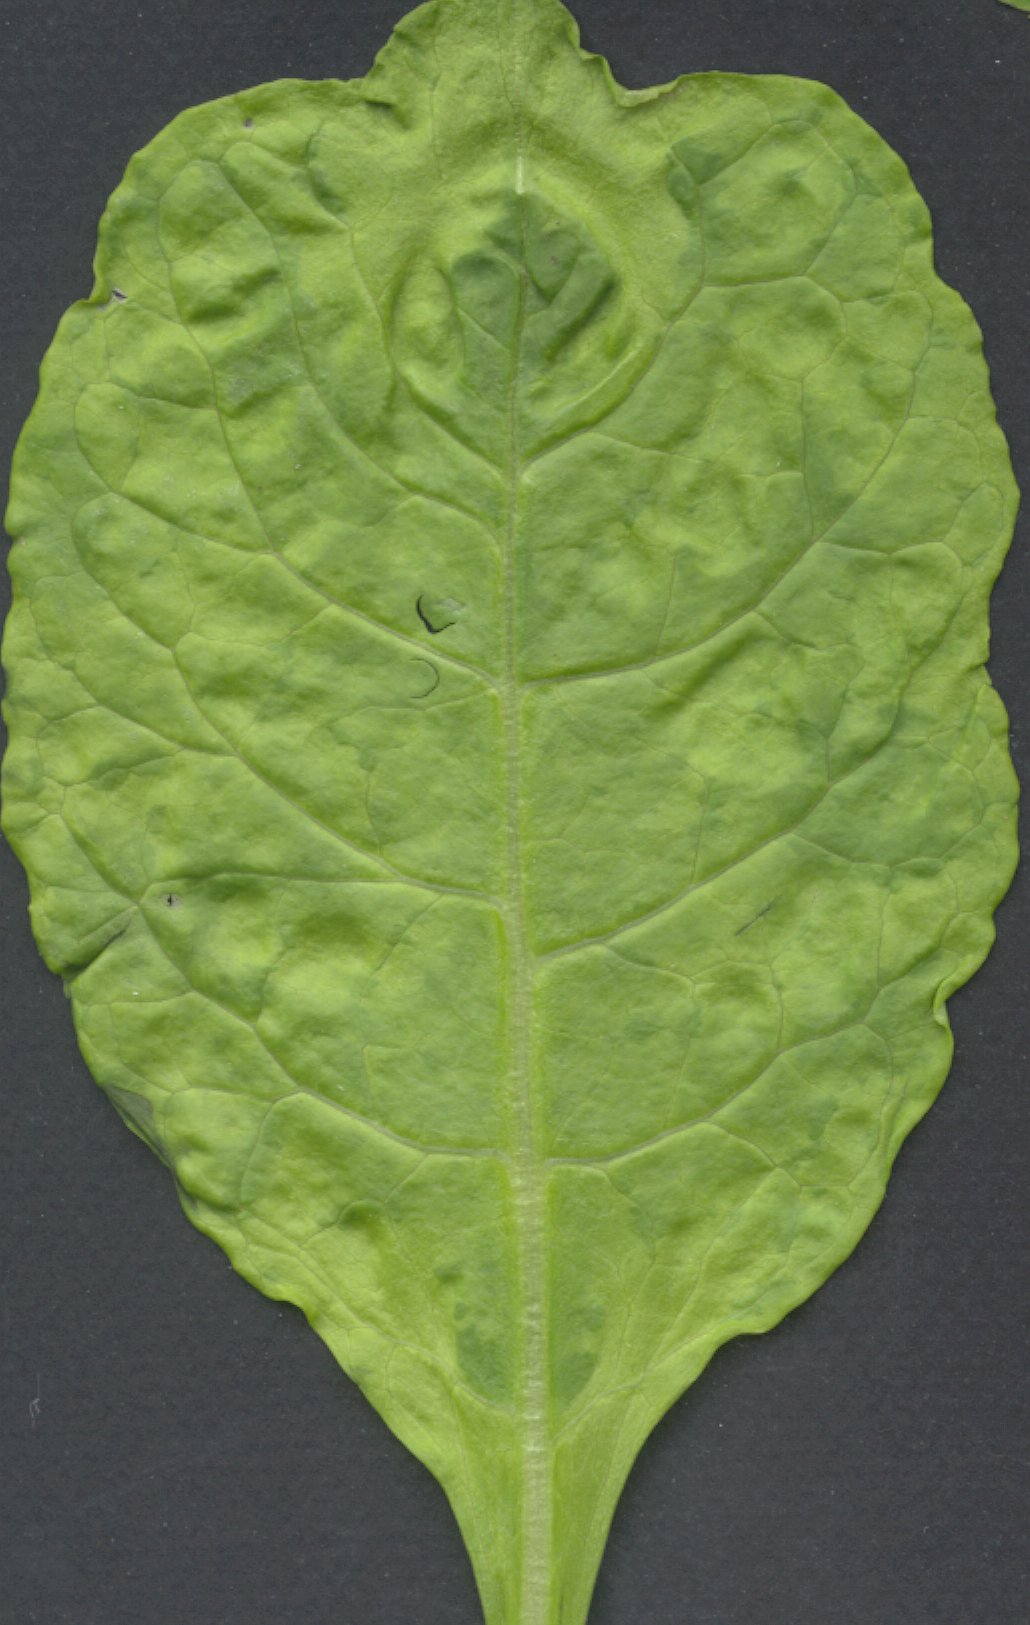 Symptoms of alfalfa latent virus (pea streak)